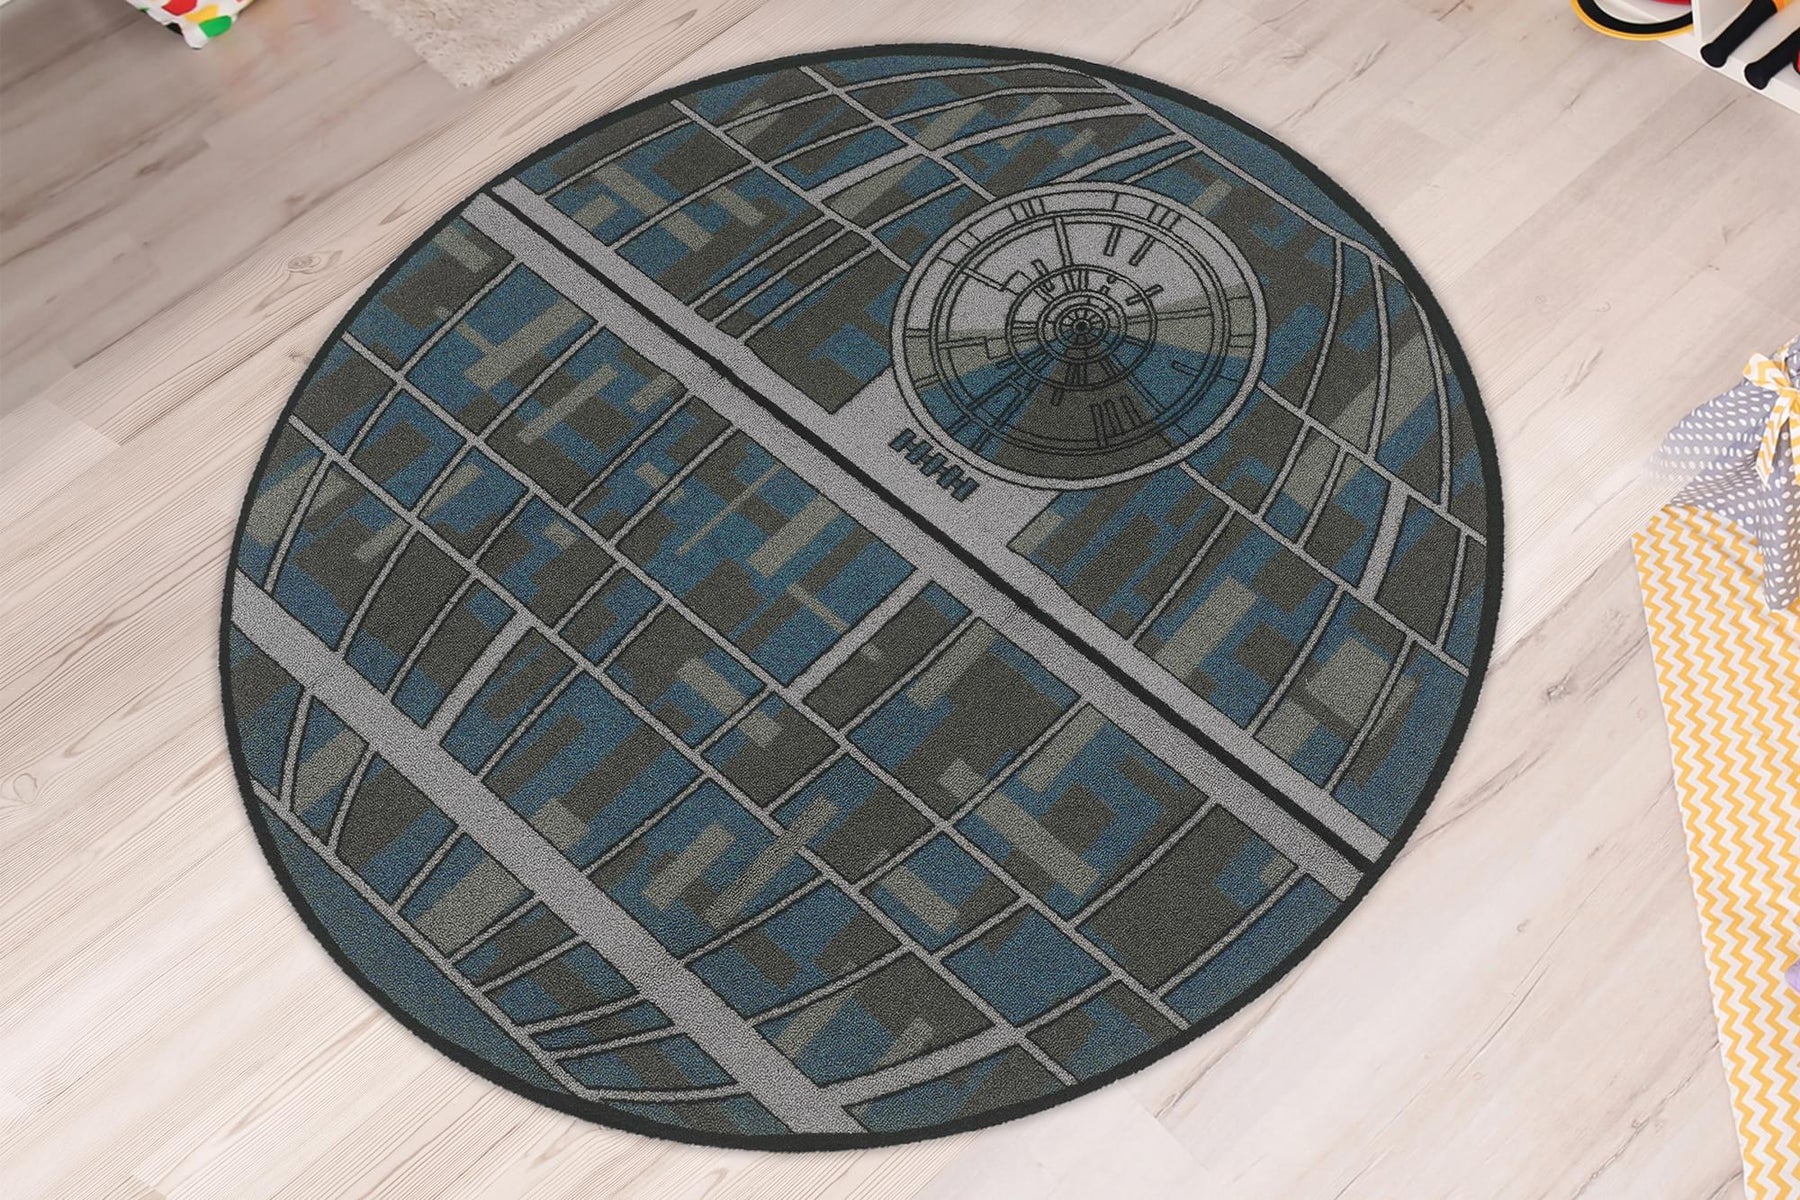 Star Wars Death Star 52-Inch Round Area Rug